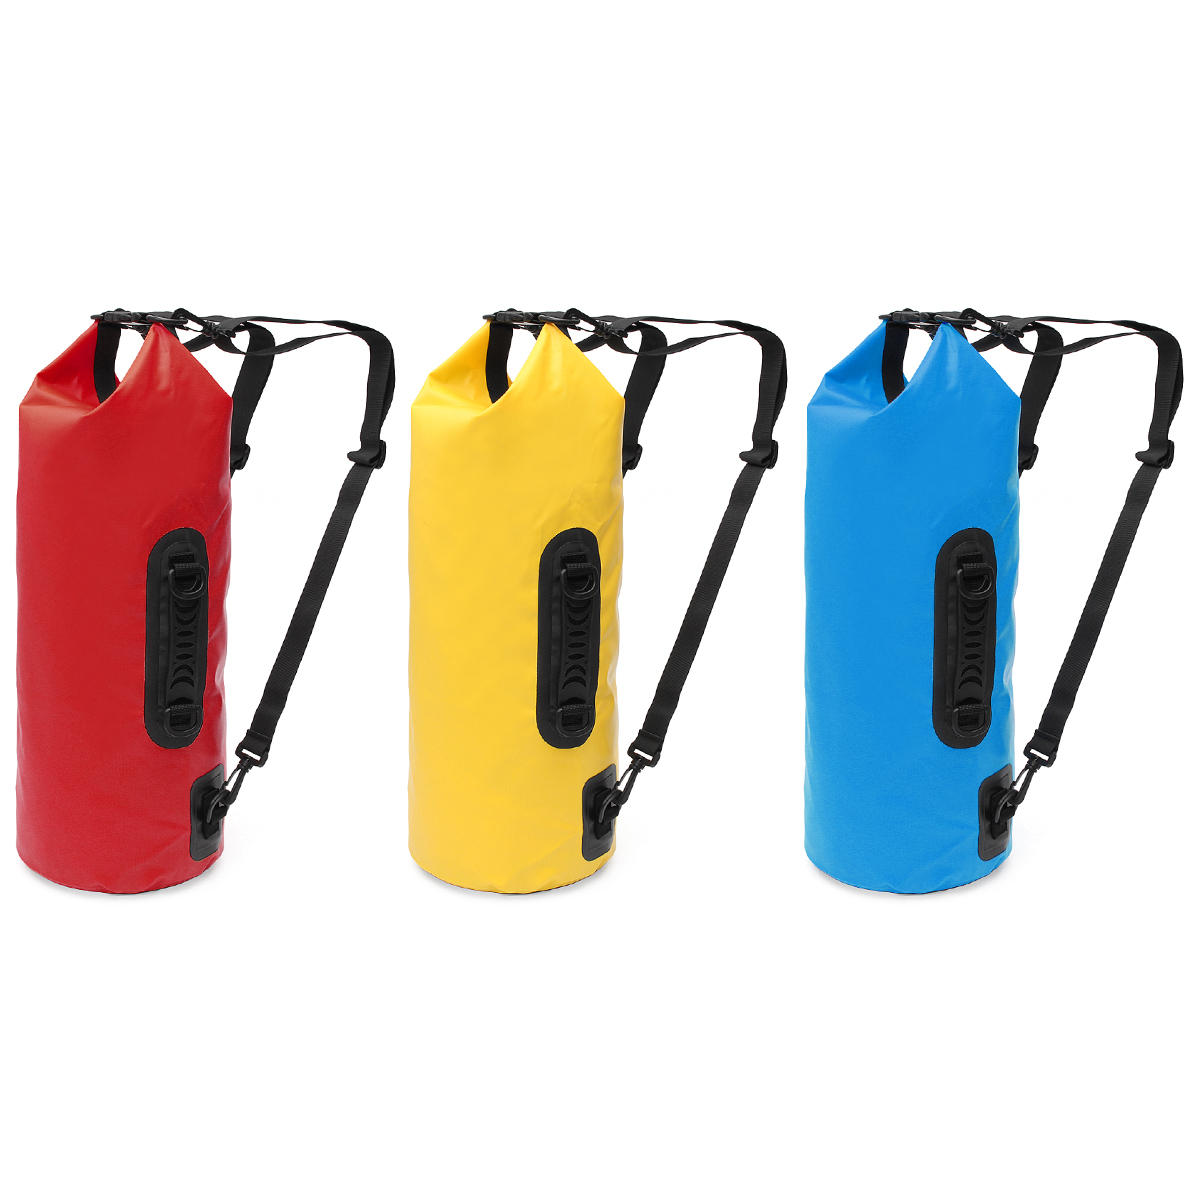 5-литровый спортивный водонепроницаемый рюкзак для хранения сухих вещей на заказ для активного отдыха на воде и в лесу.